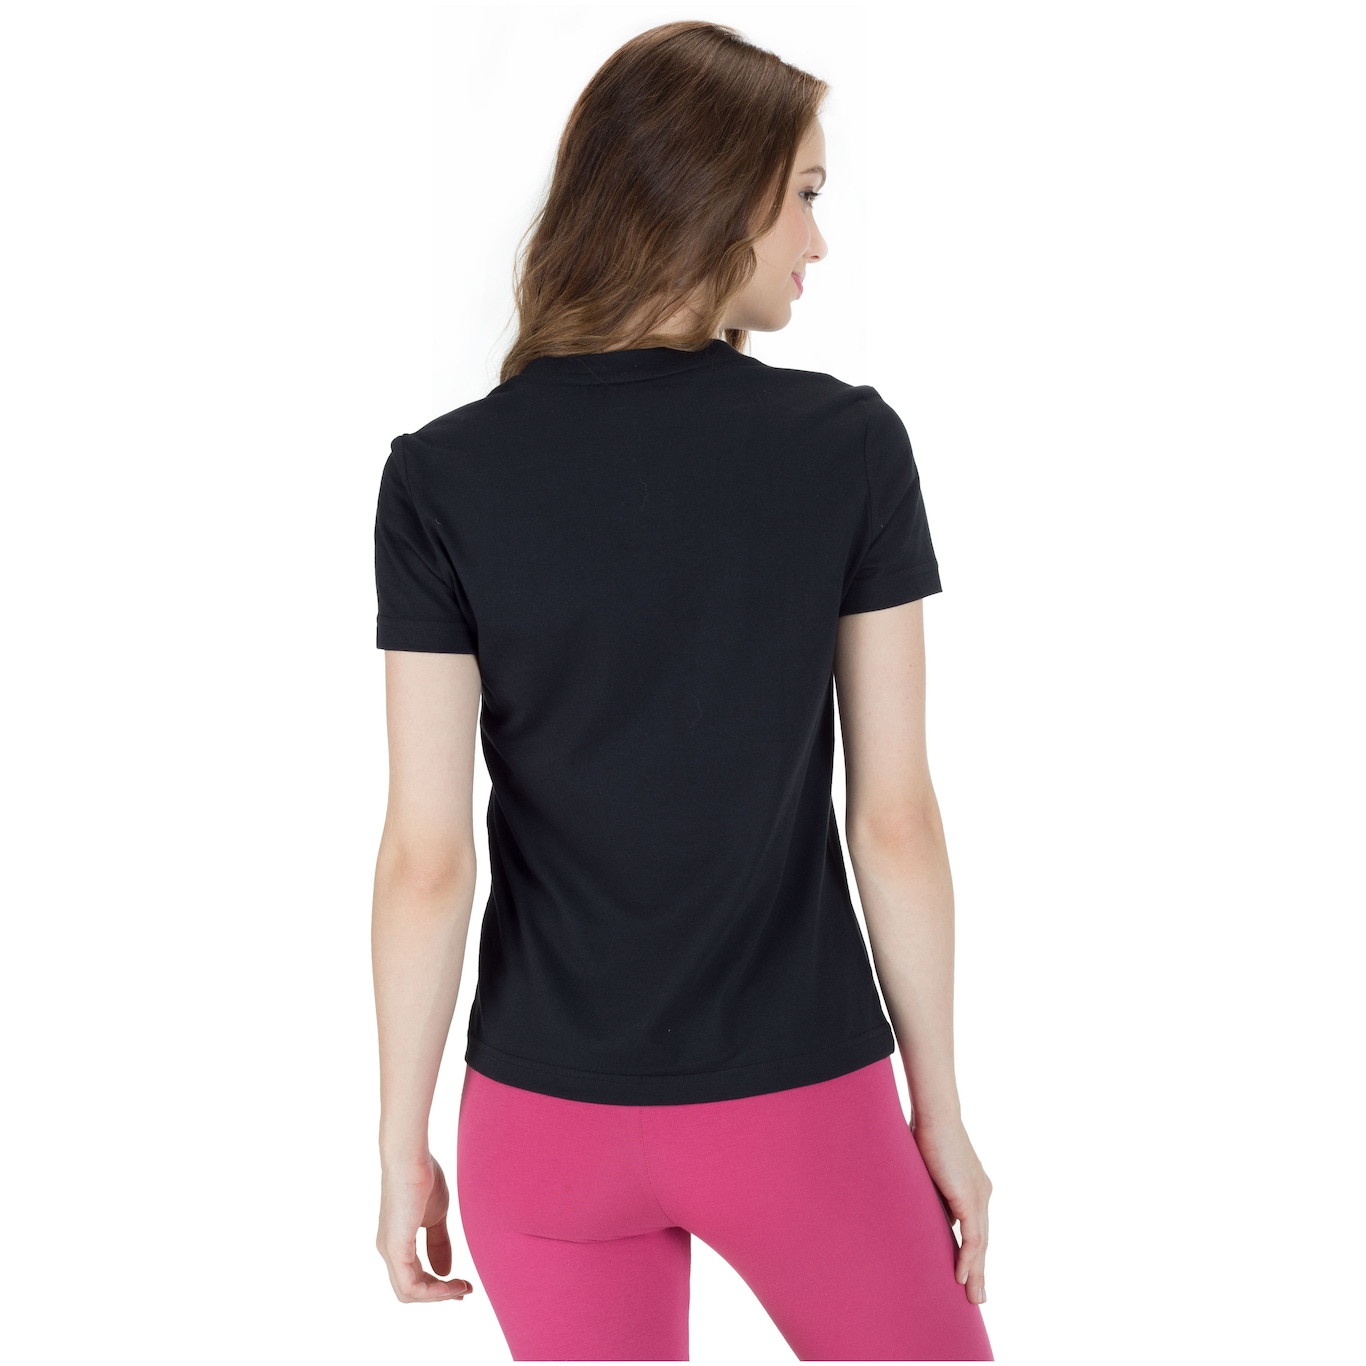 Camiseta Adidas Essentials Linear Feminina - Preto+Branco